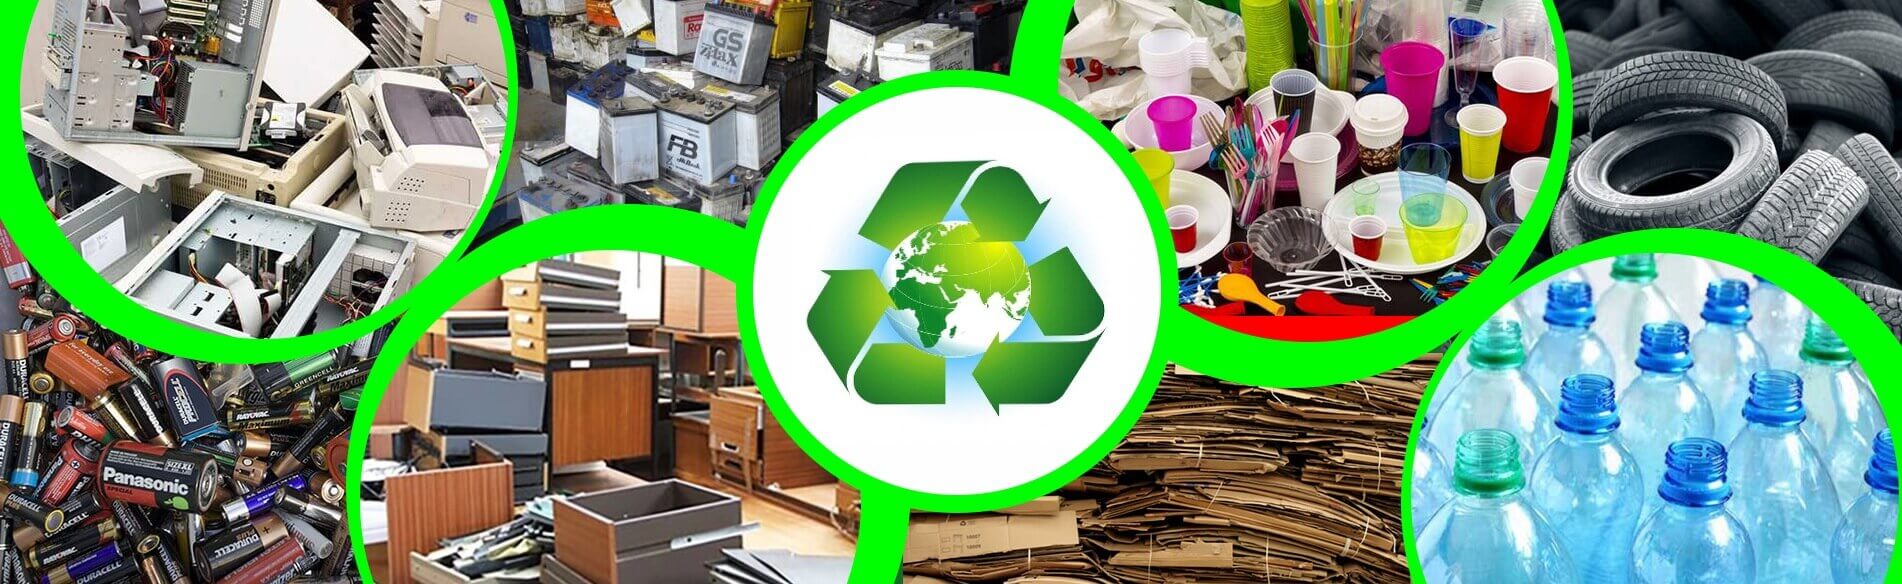 Обработка и утилизация отходов